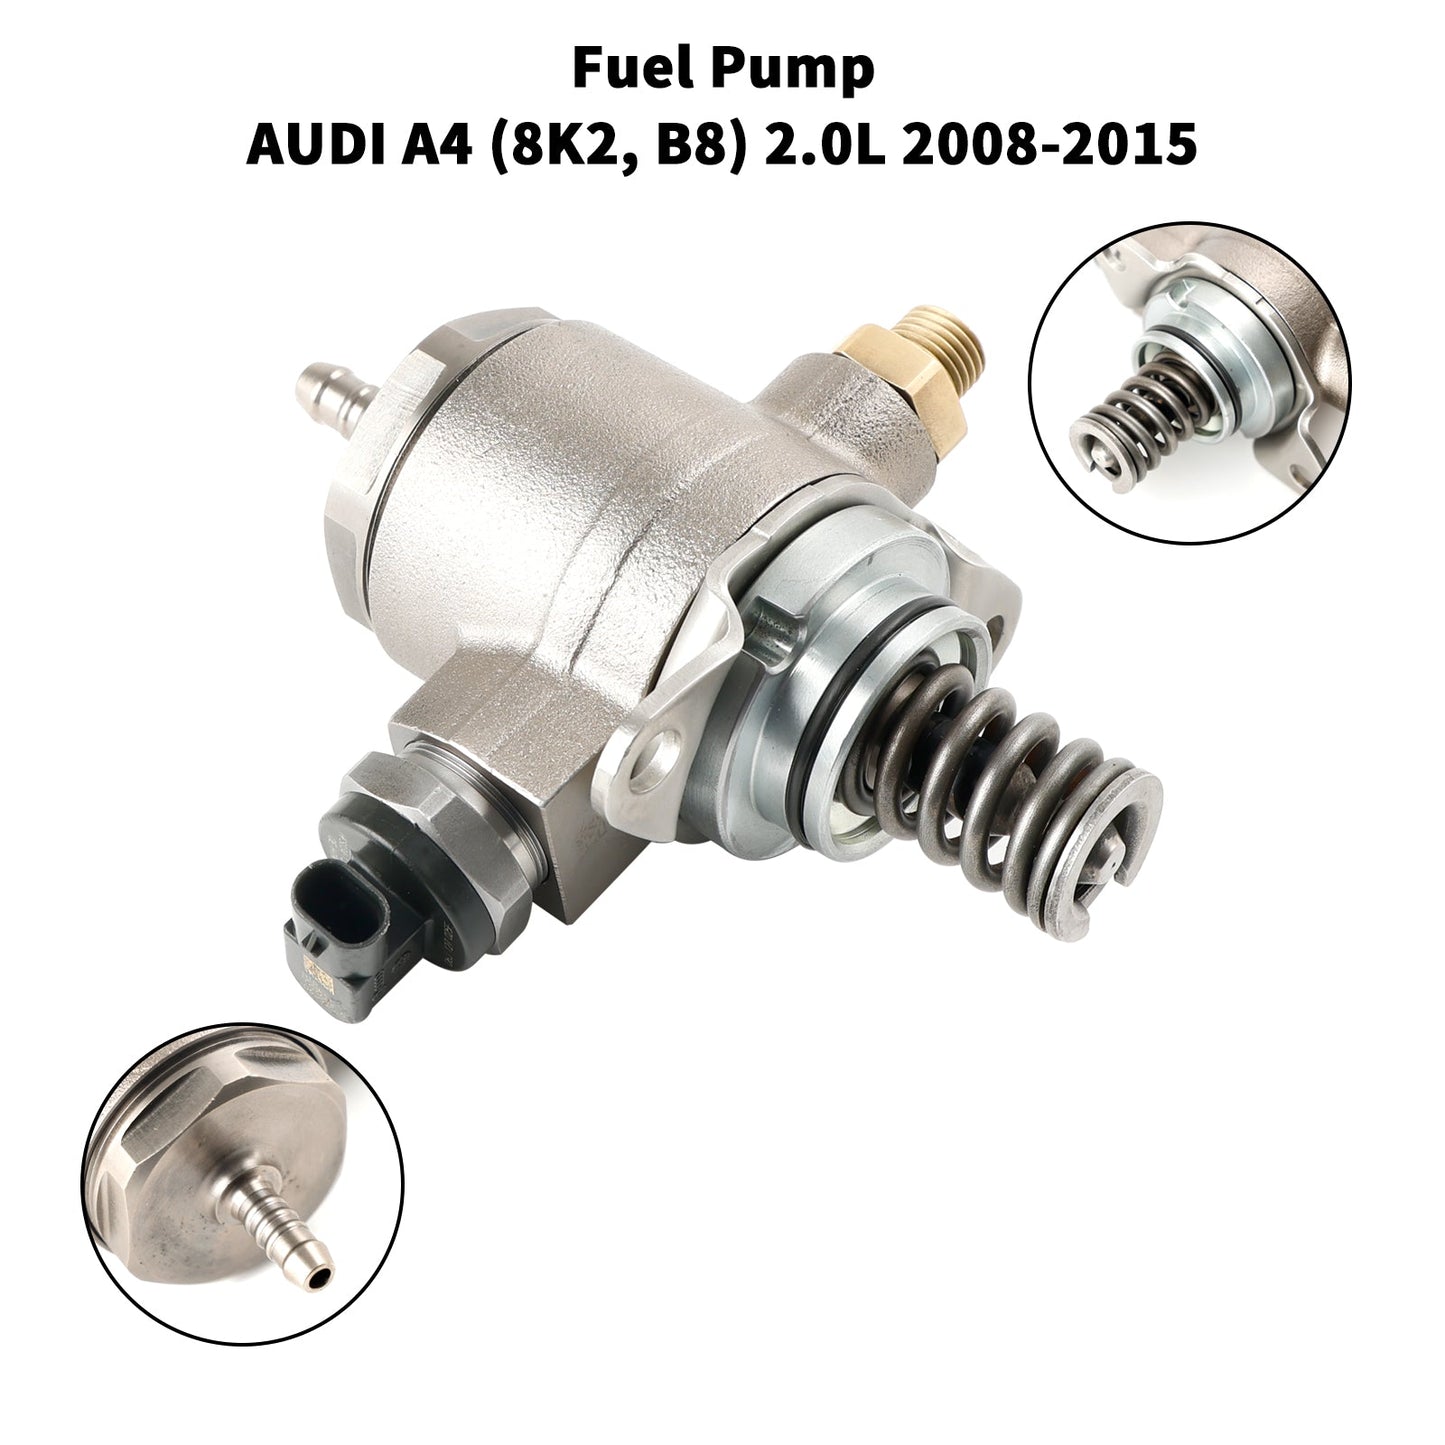 2011-2014 AUDI A6 (4G2, C7, 4GC) 2.0L High Pressure Pump Fuel Pump 06J127025E